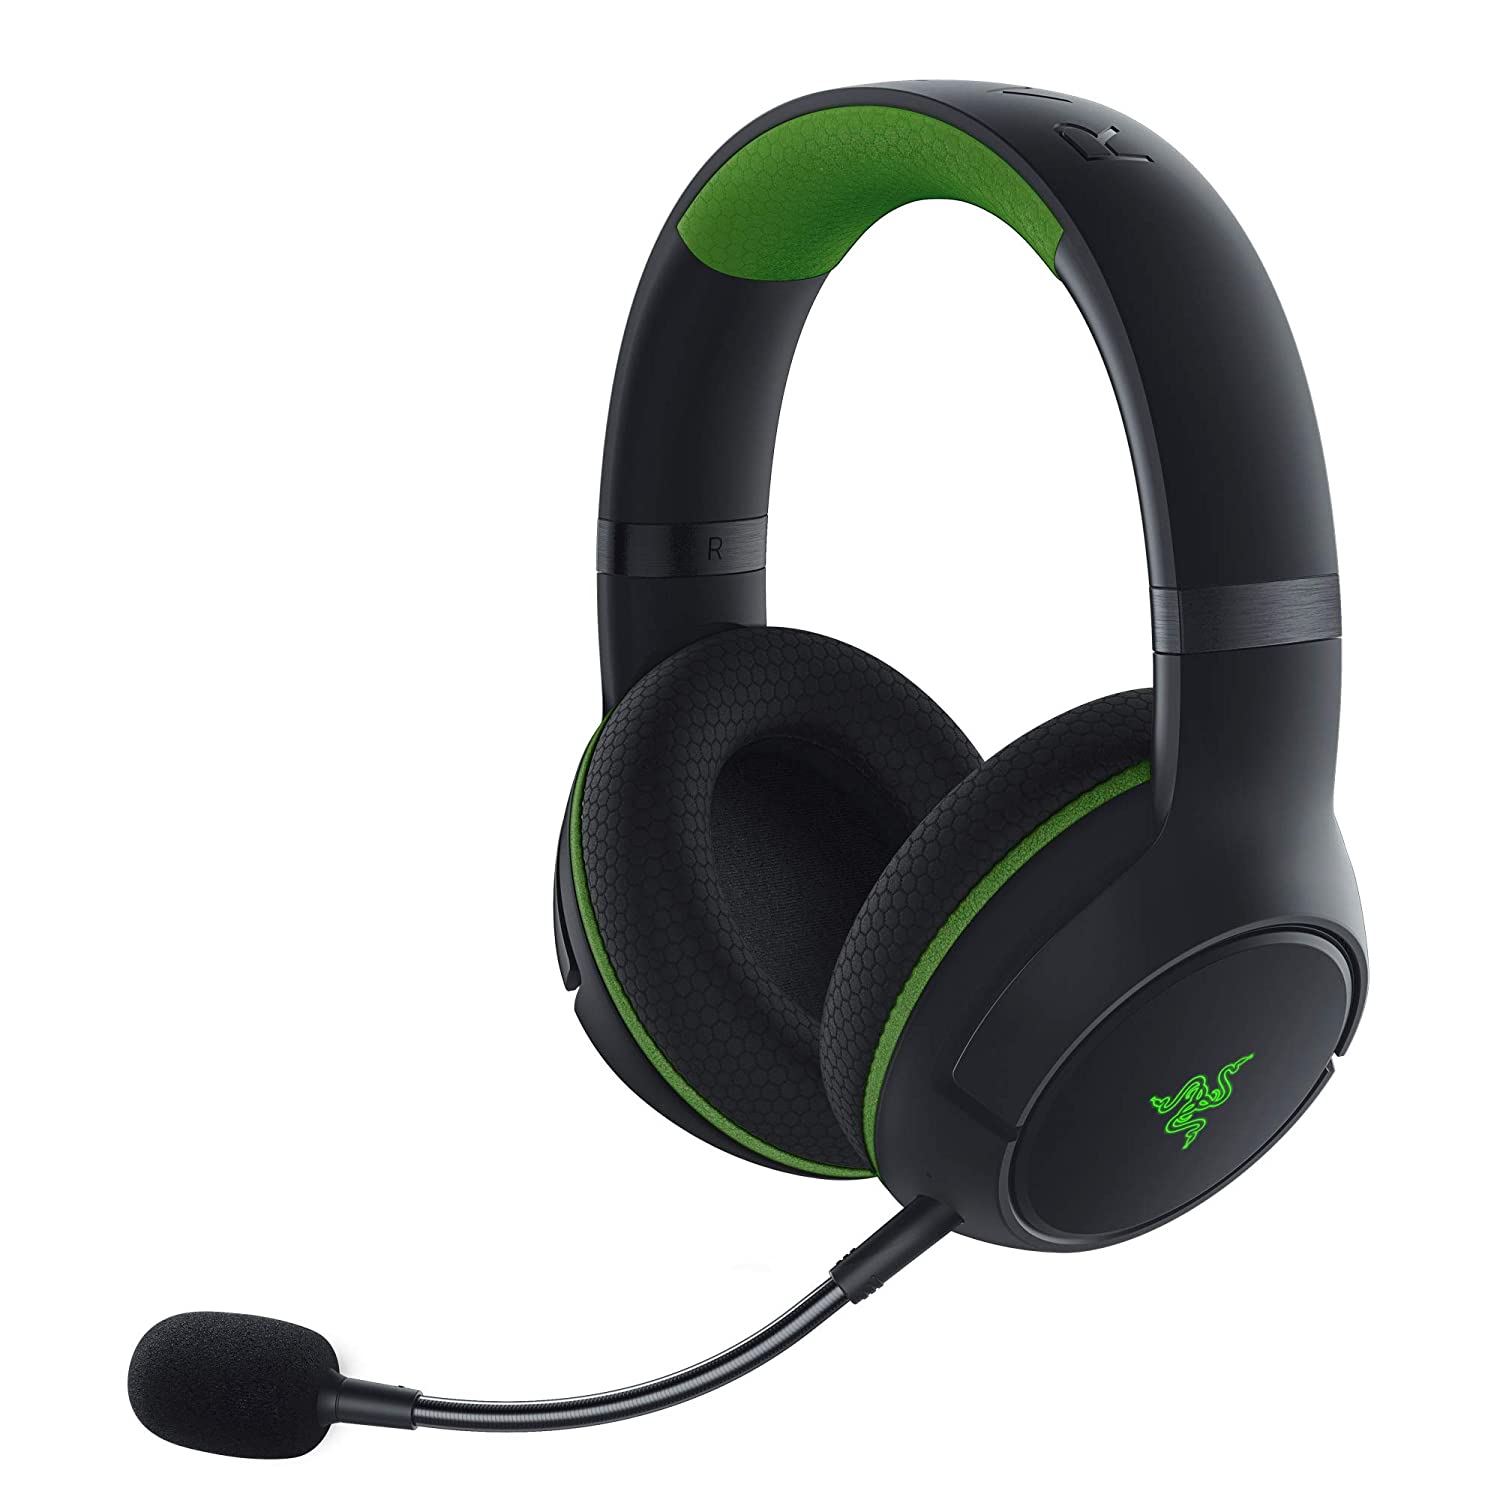 Razer Kaira Pro Wireless Gaming Headset for Xbox (Black or White) $90 + Free Shipping